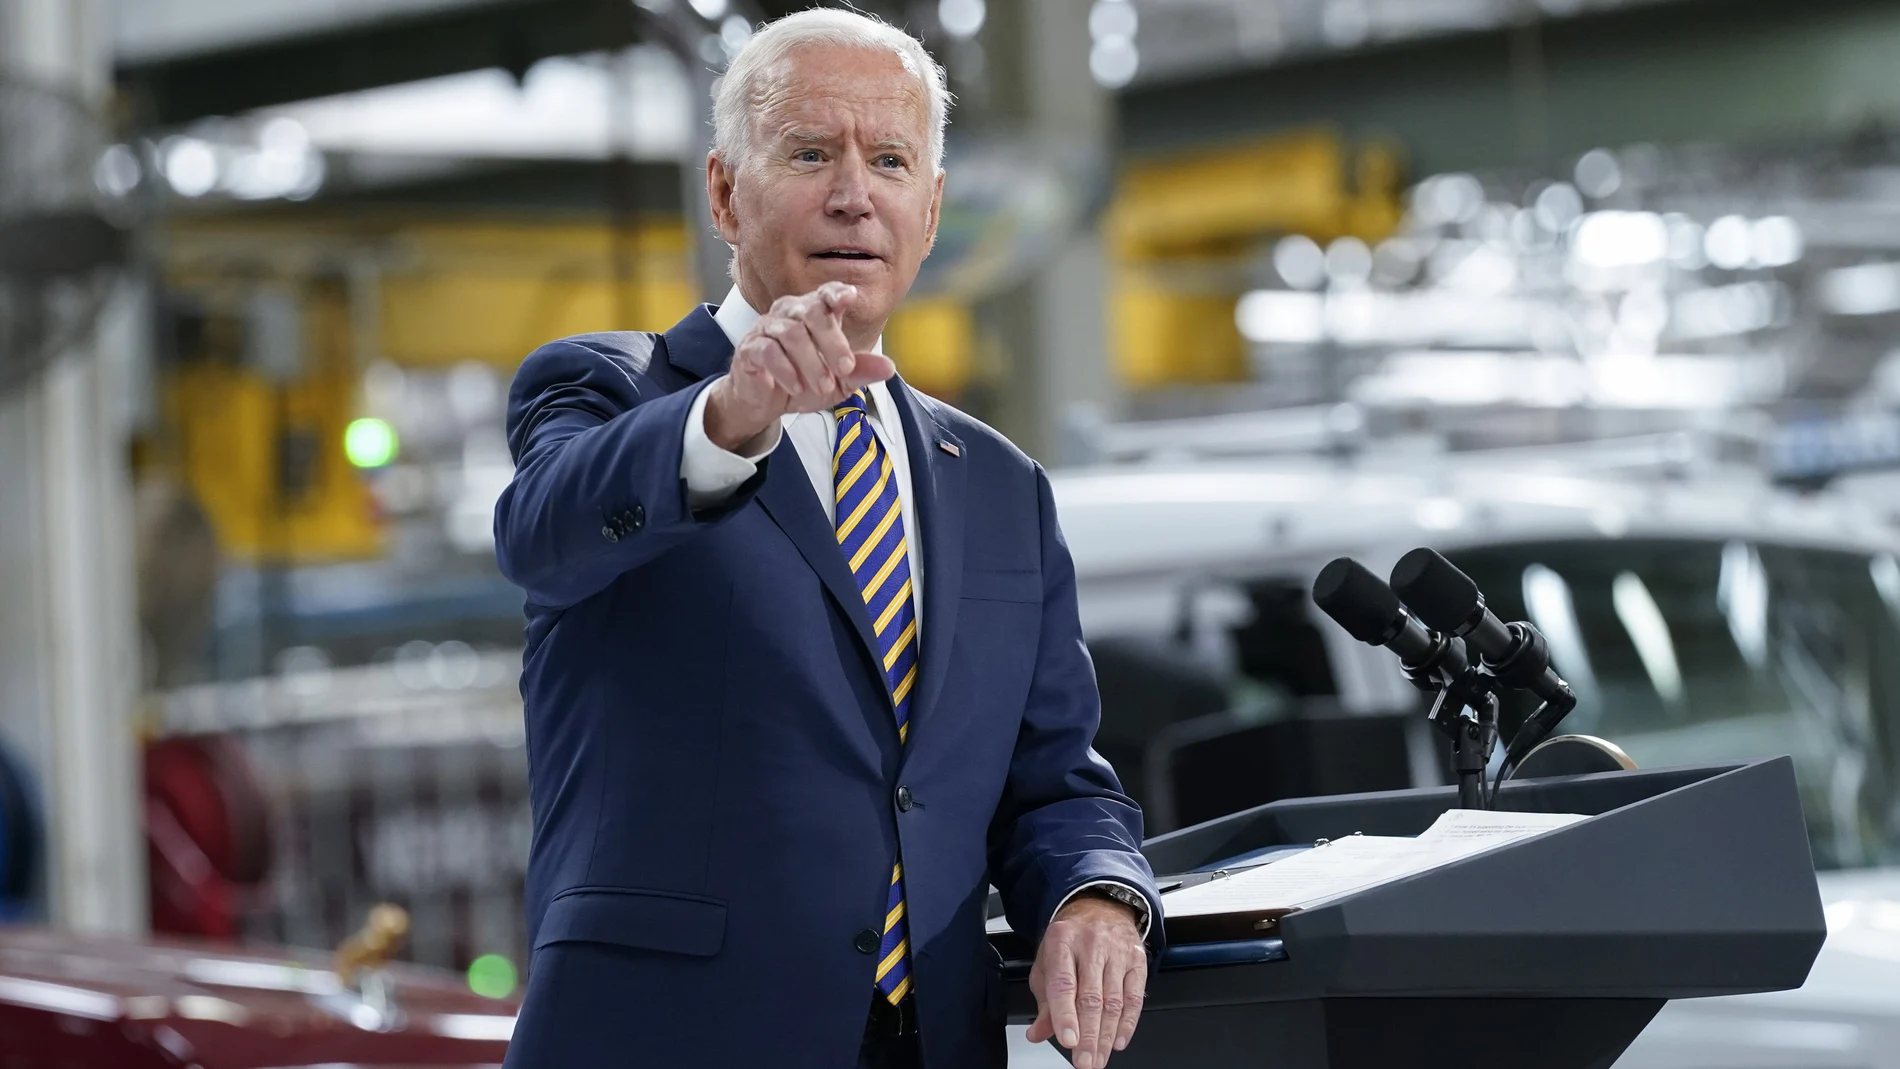 Biden había anunciado hace un mes un posible plan bipartidista que acercaría posturas para sacar adelante su ley de infraestructura soñada, aunque tuvo que ceder